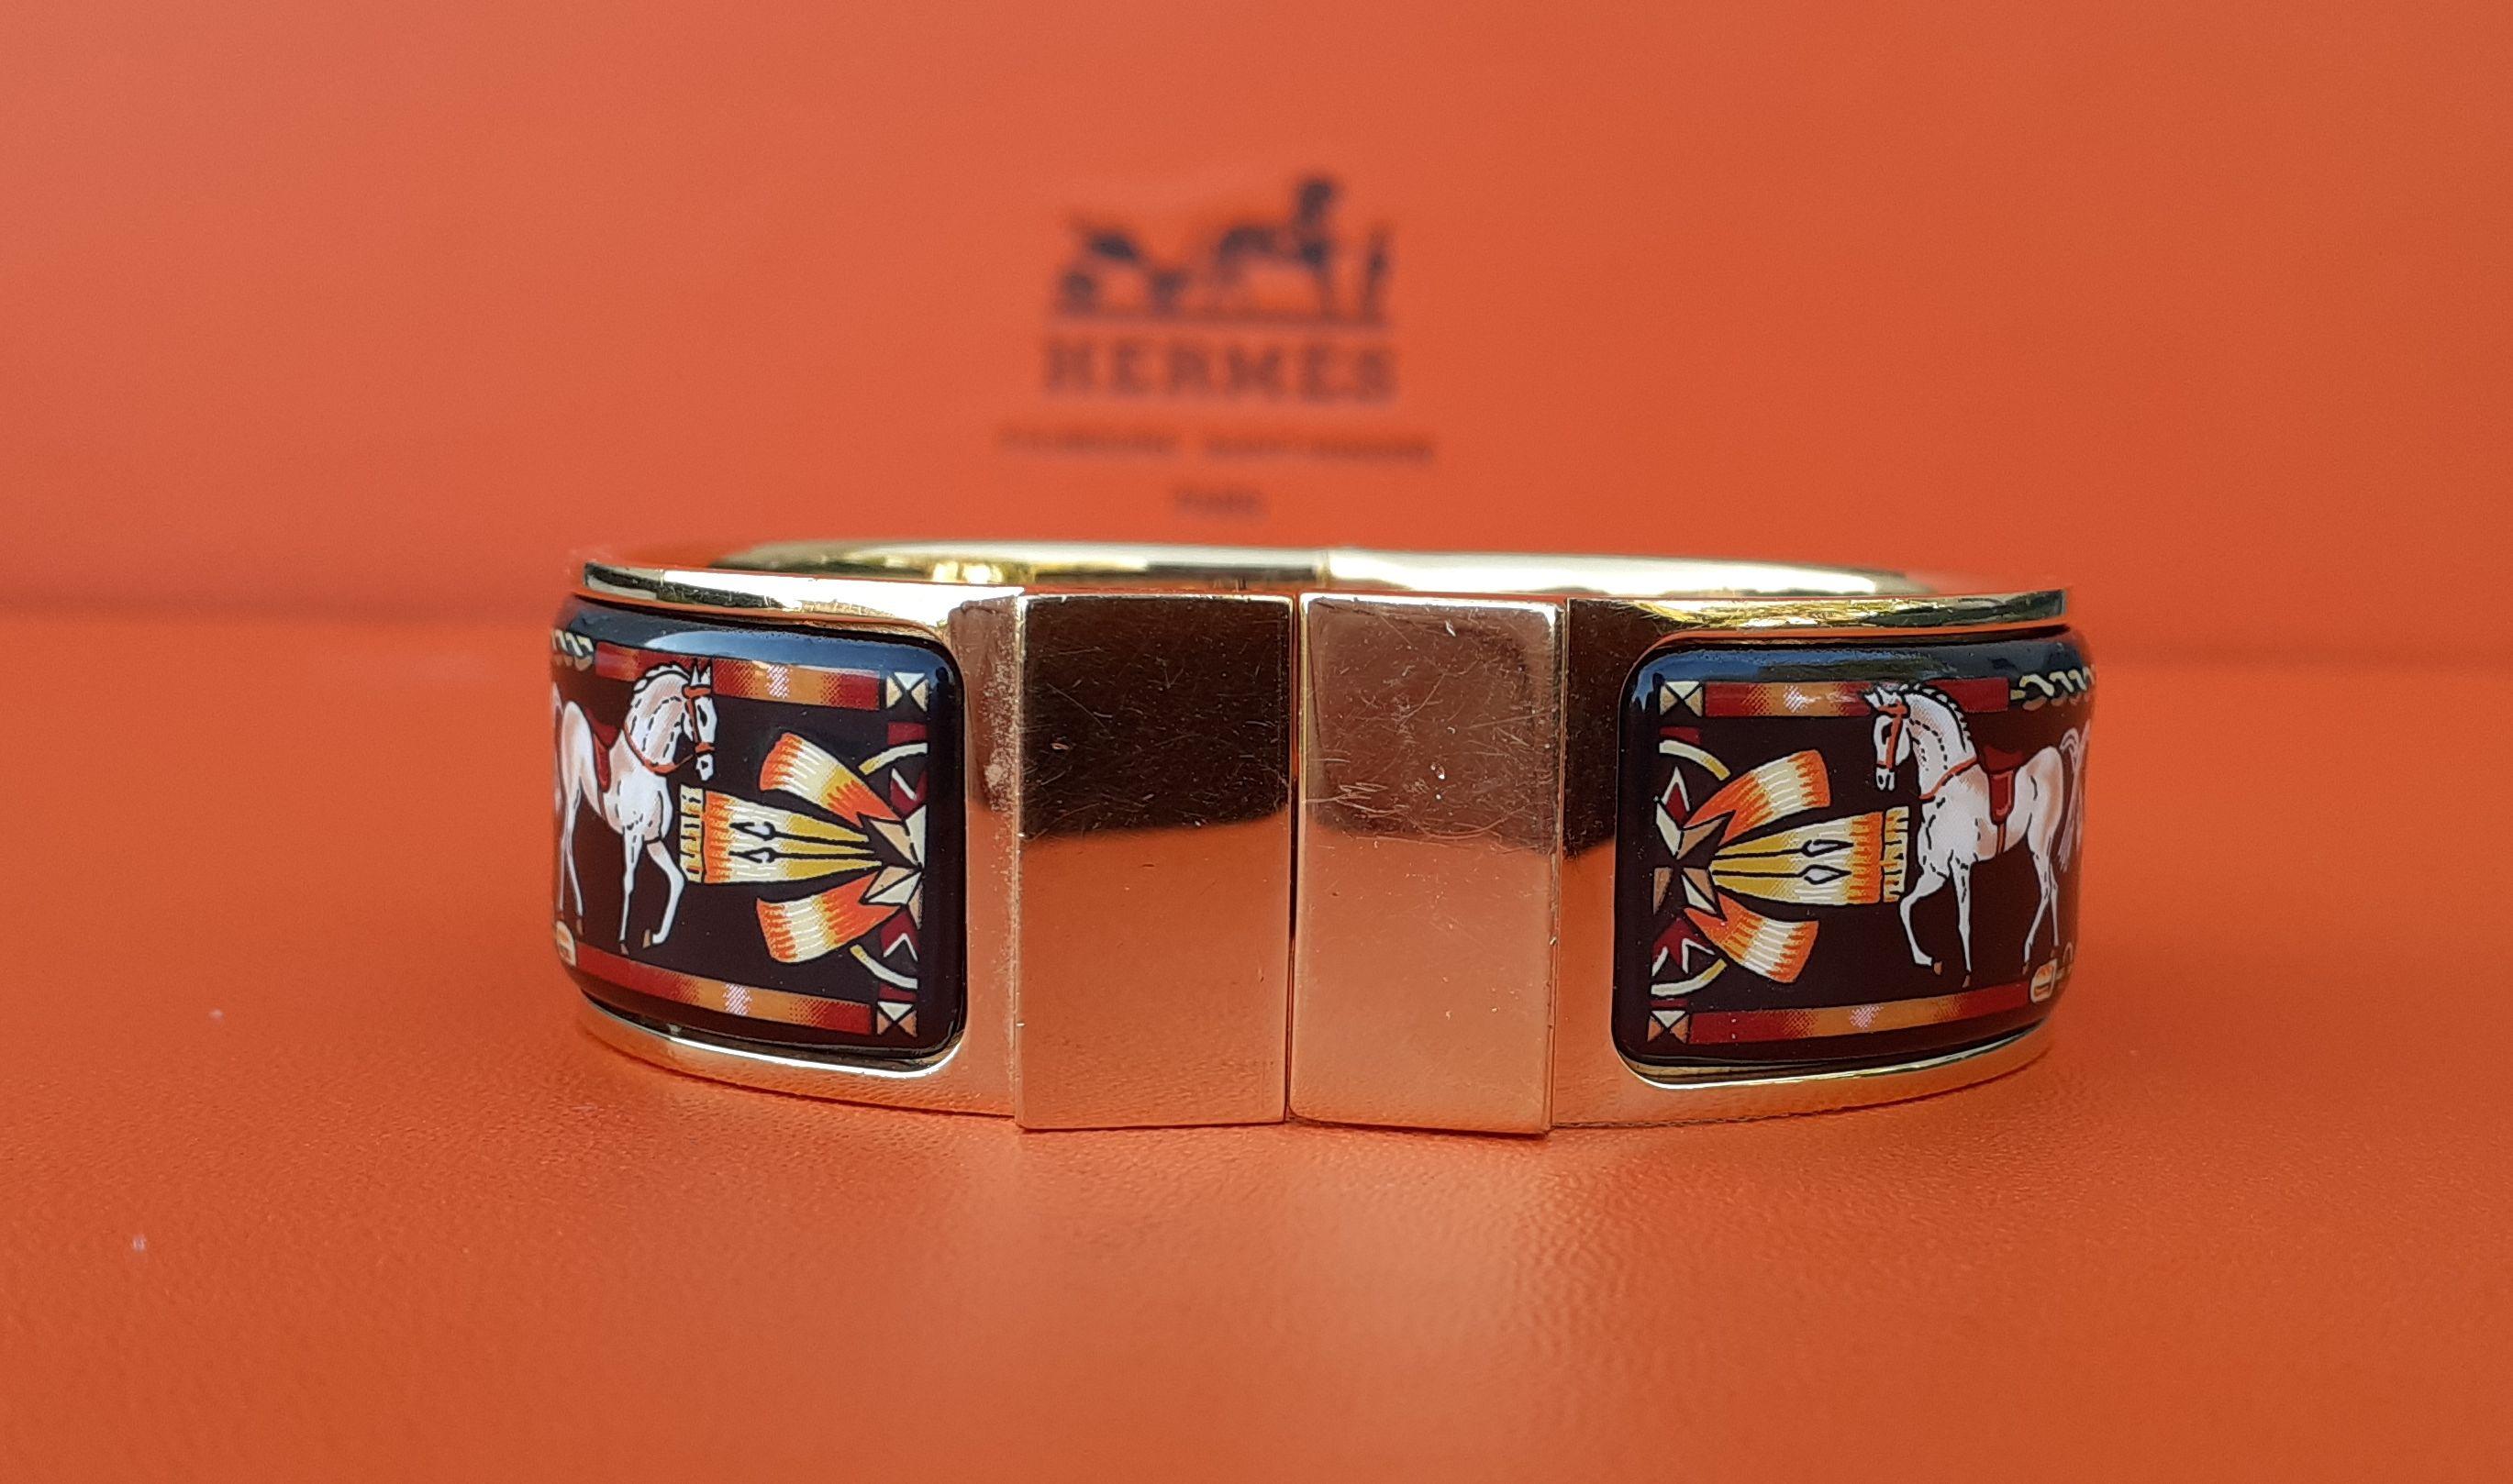 Magnifique bracelet Hermès authentique 

Imprimer : Chevaux

